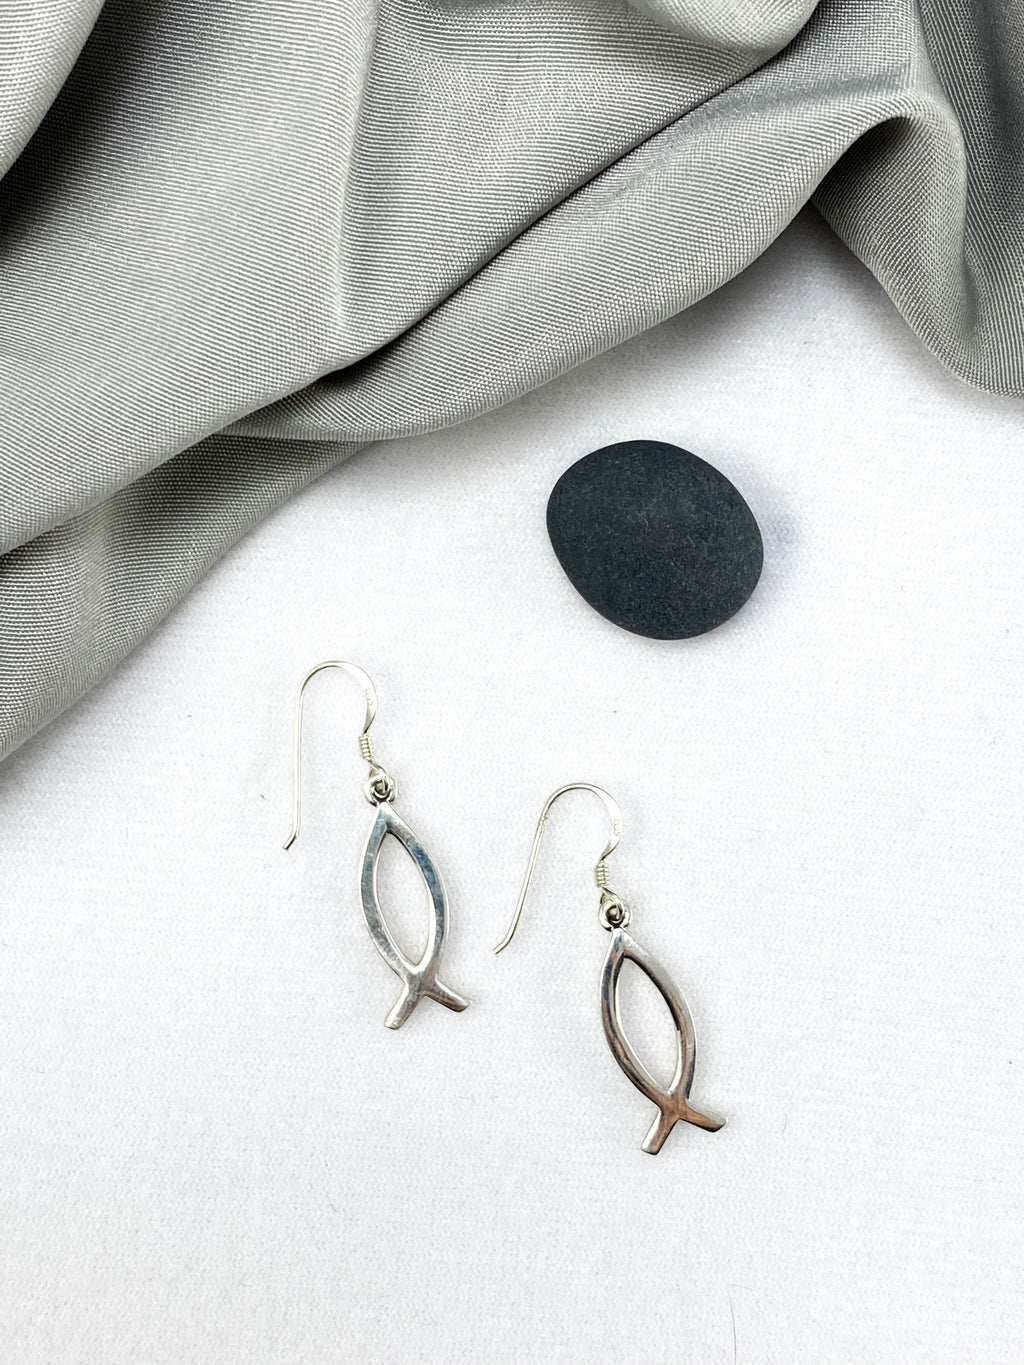 Sterling Silver Fish Earrings